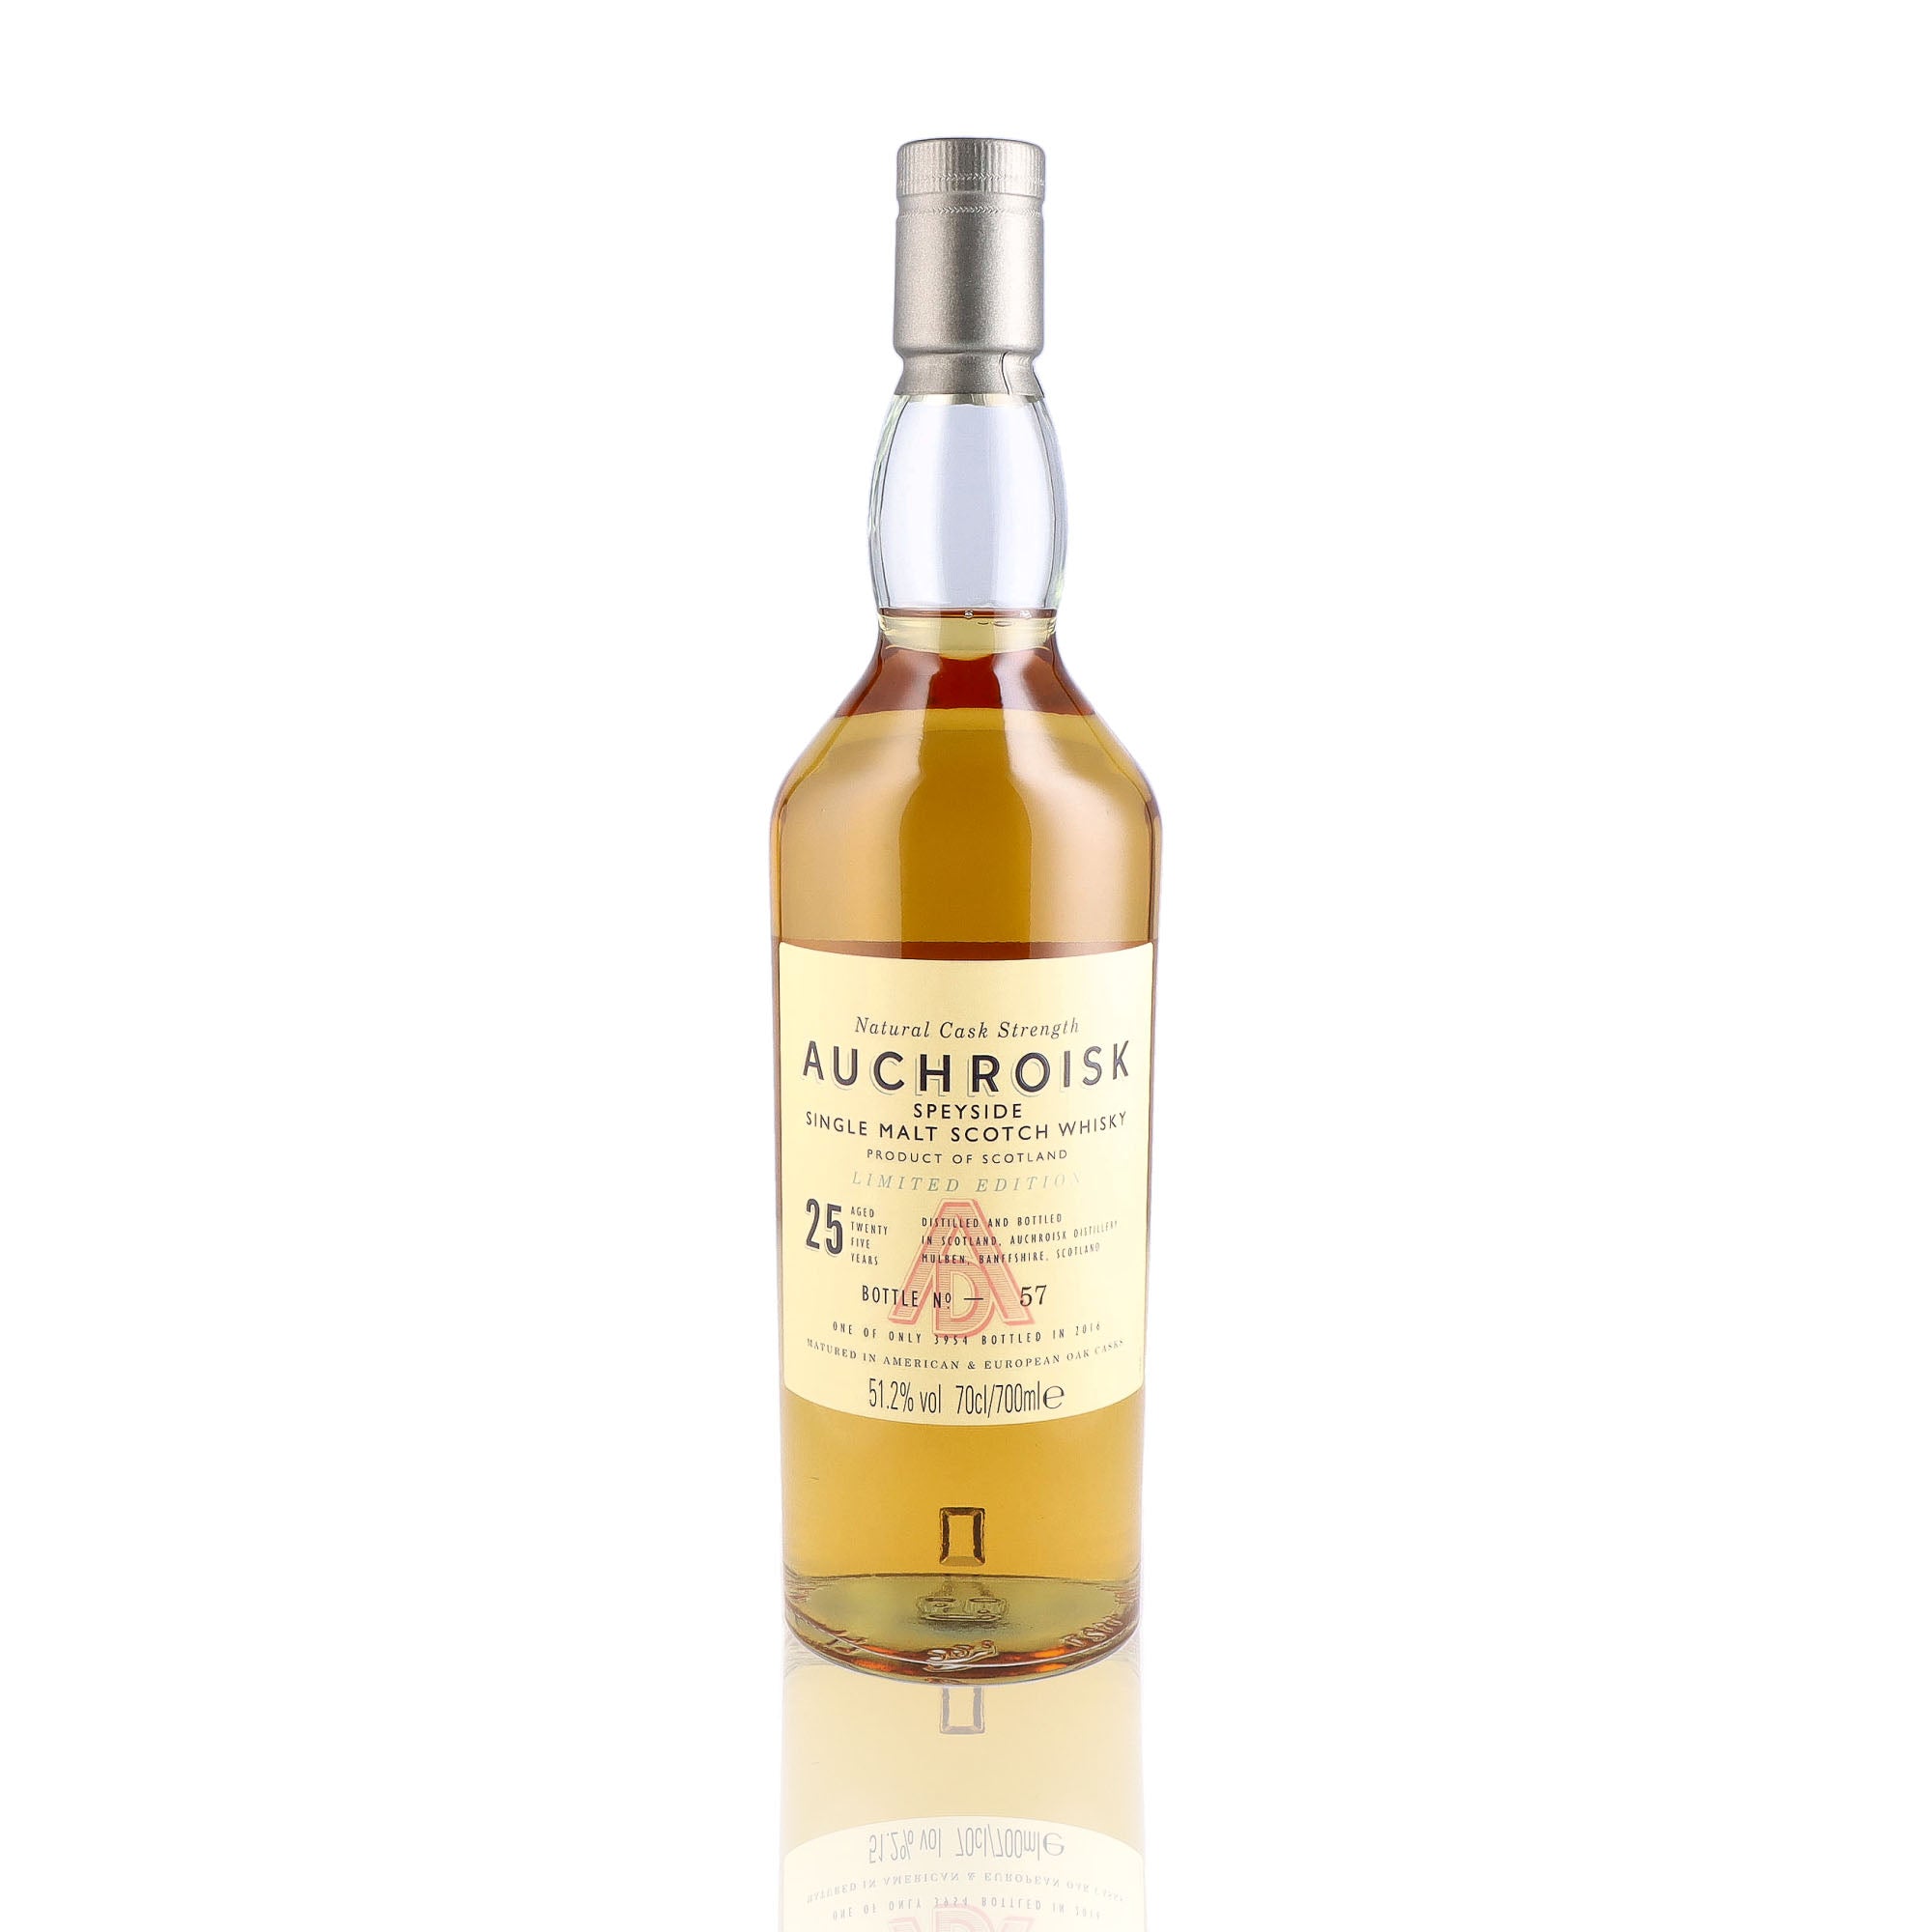 Une bouteille de Scotch Whisky Single Malt de la marque Auchroisk, nommée Edition Limitée, 25 ans d'âge